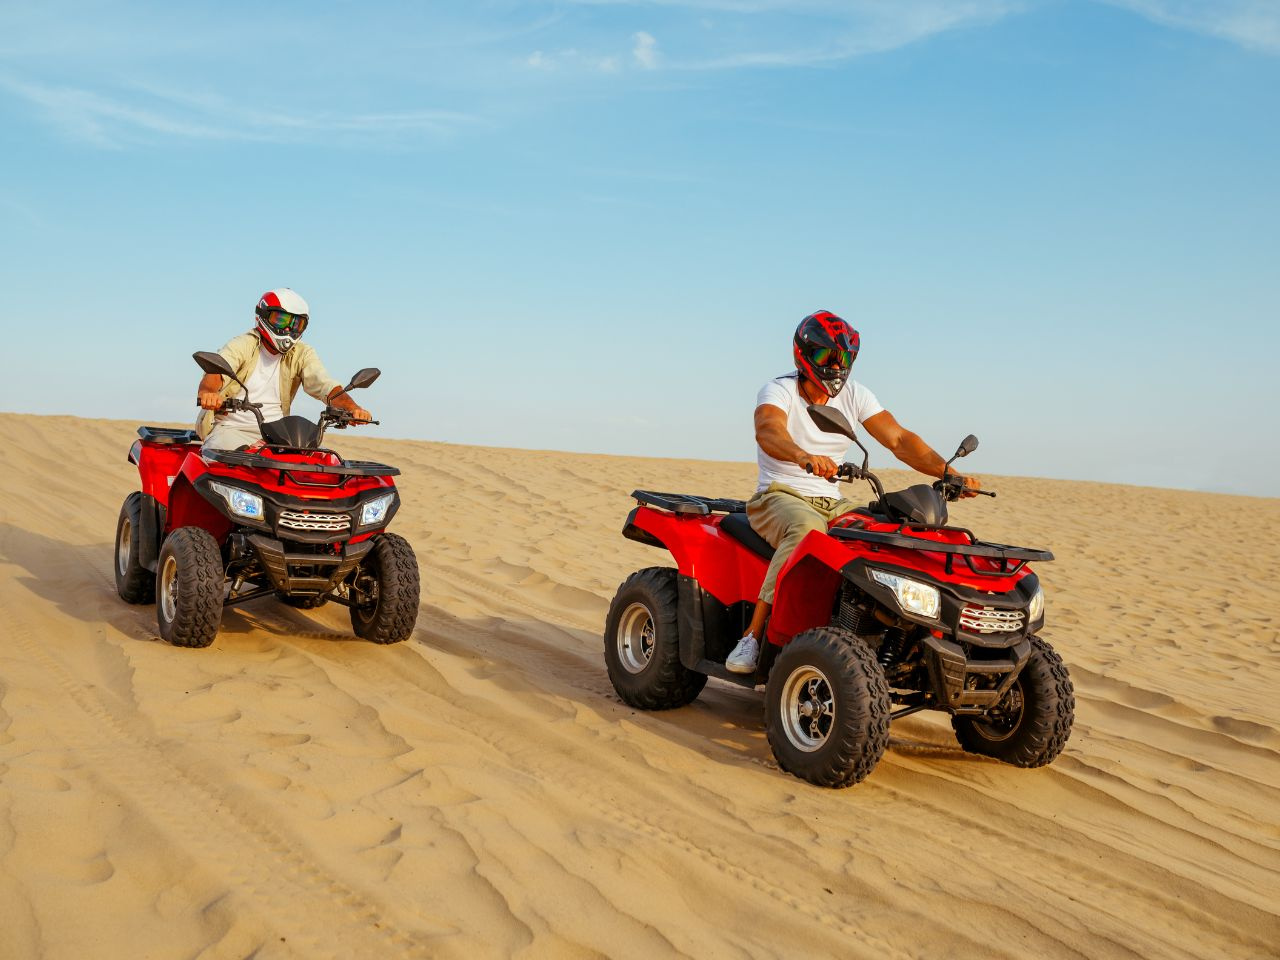 Sunset Desert Safari Trip per ATV Quad vanuit Marsa Alam